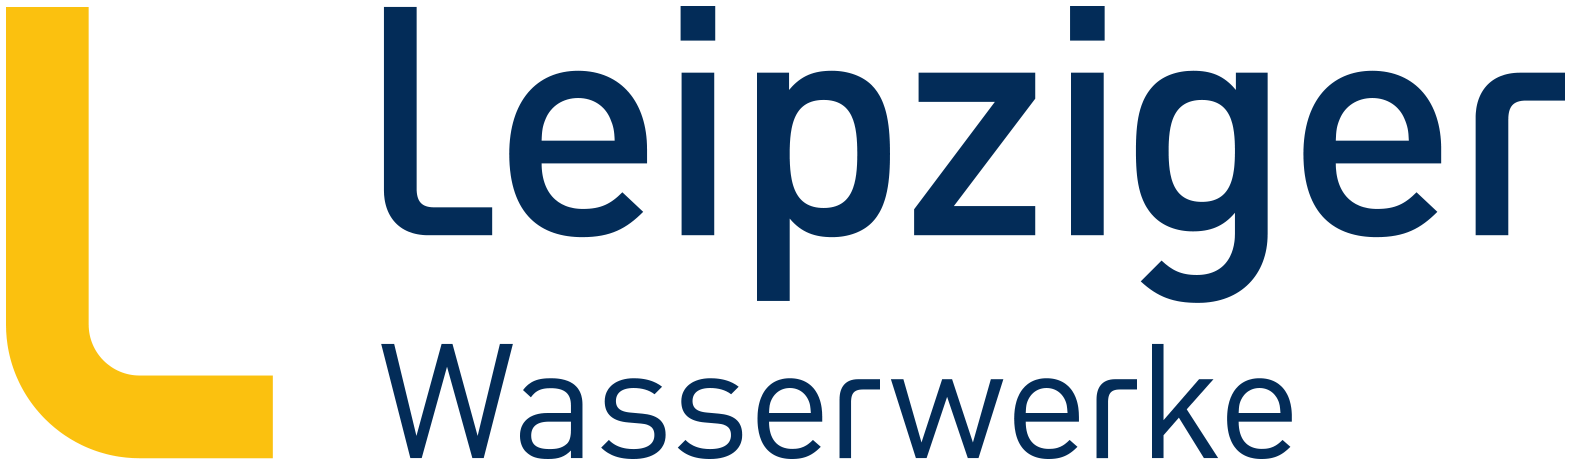 Leipziger Wasserwerke Logo